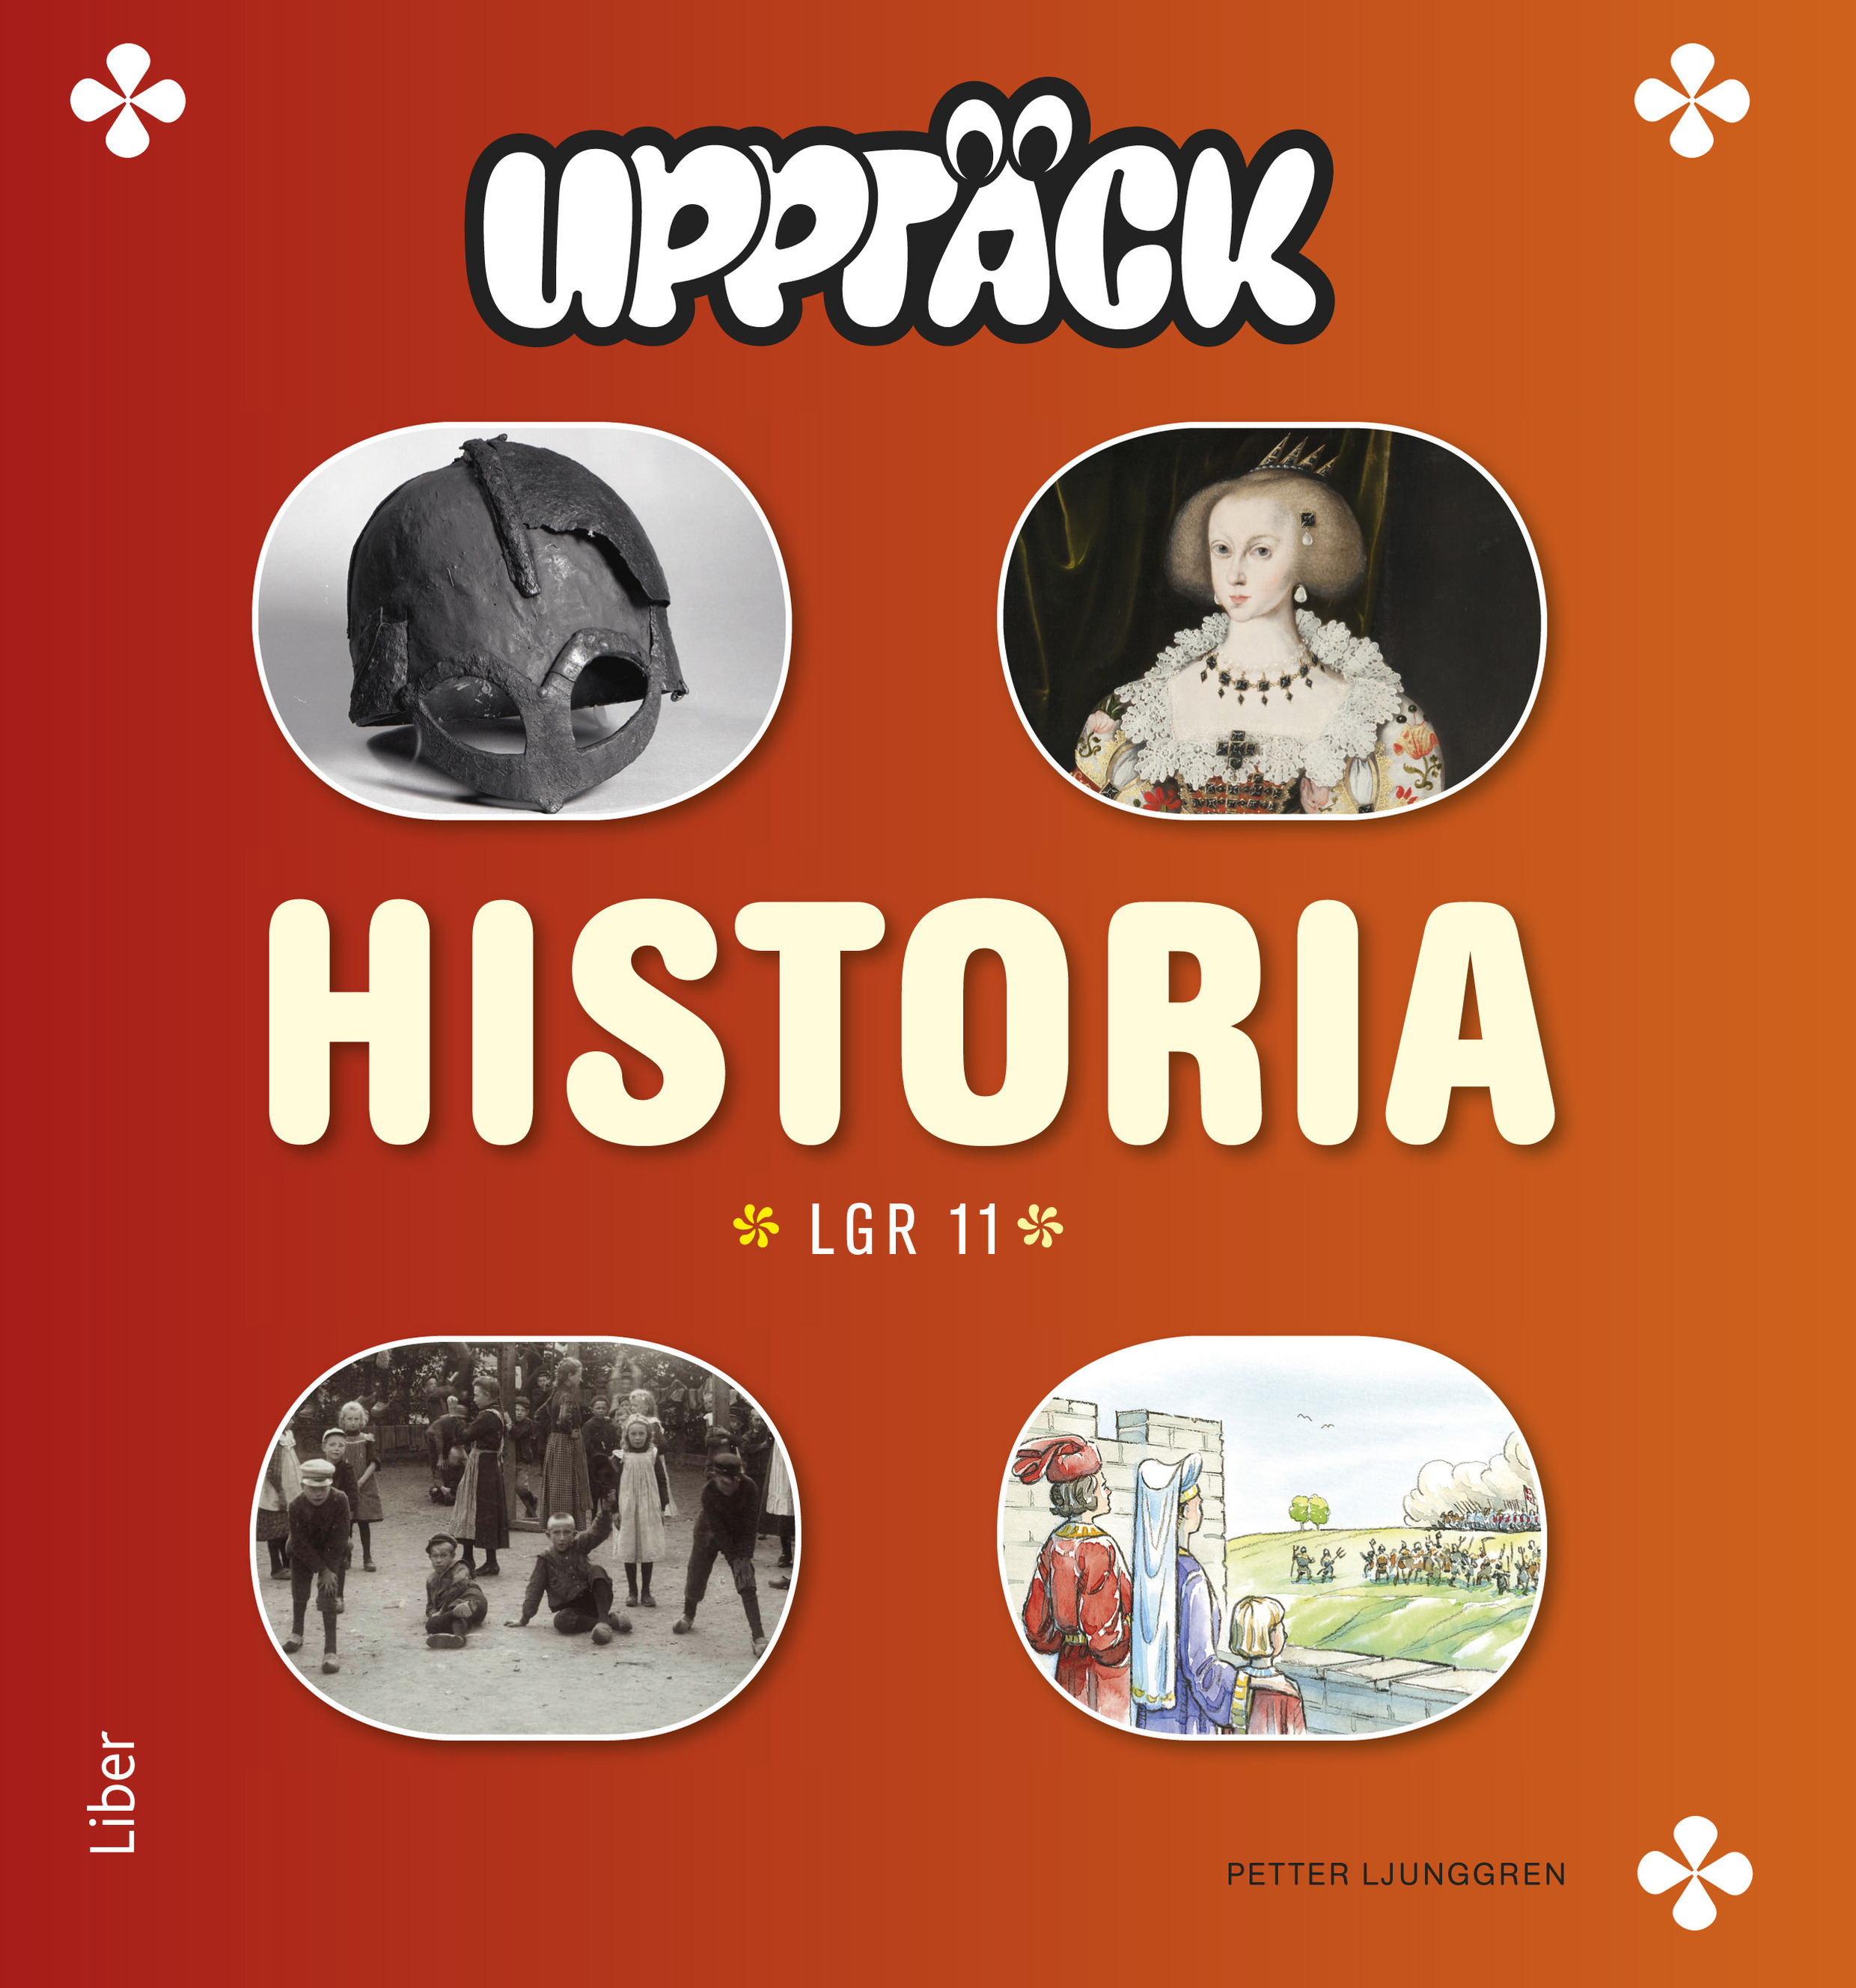 UPPTÄCK Historia, e-bok Textview - SPSM Webbutiken